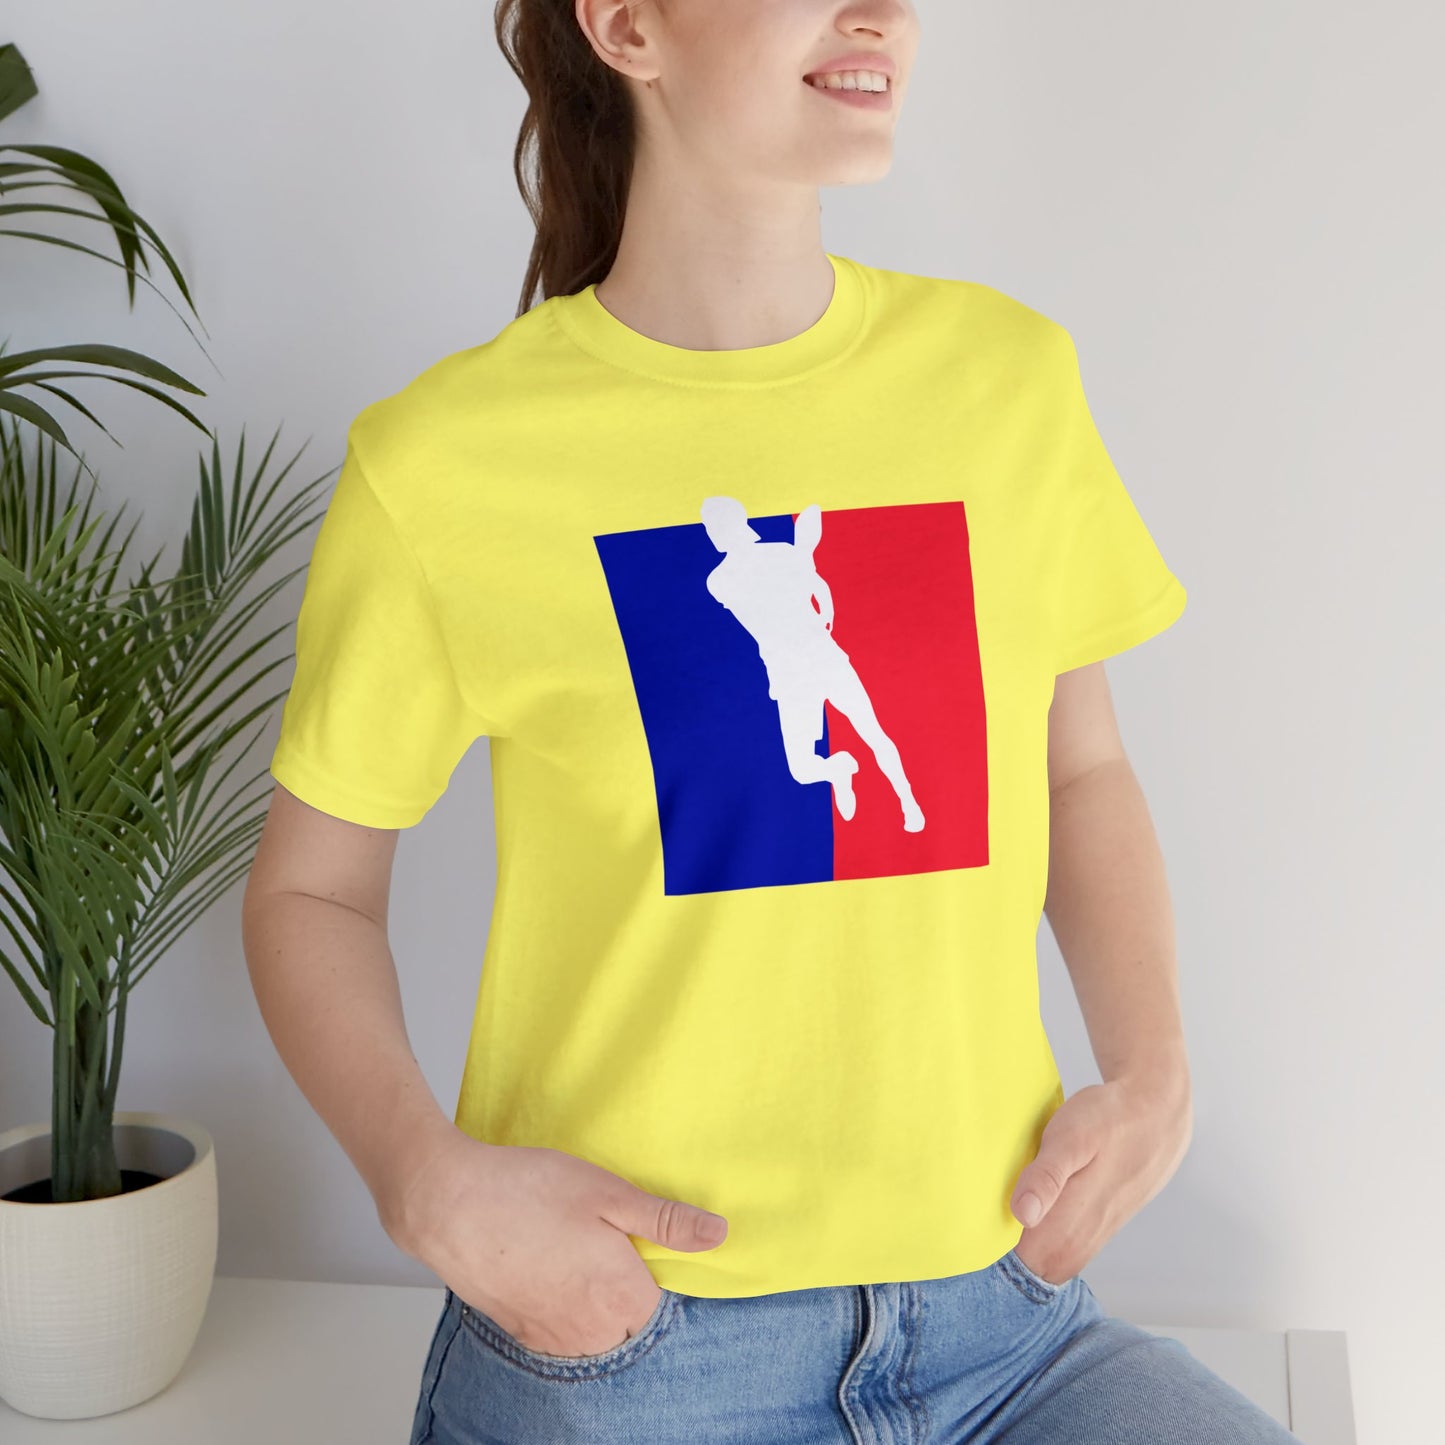 Unisex Pickleball Player Logo Cool, Unique Design Premium T-Shirt